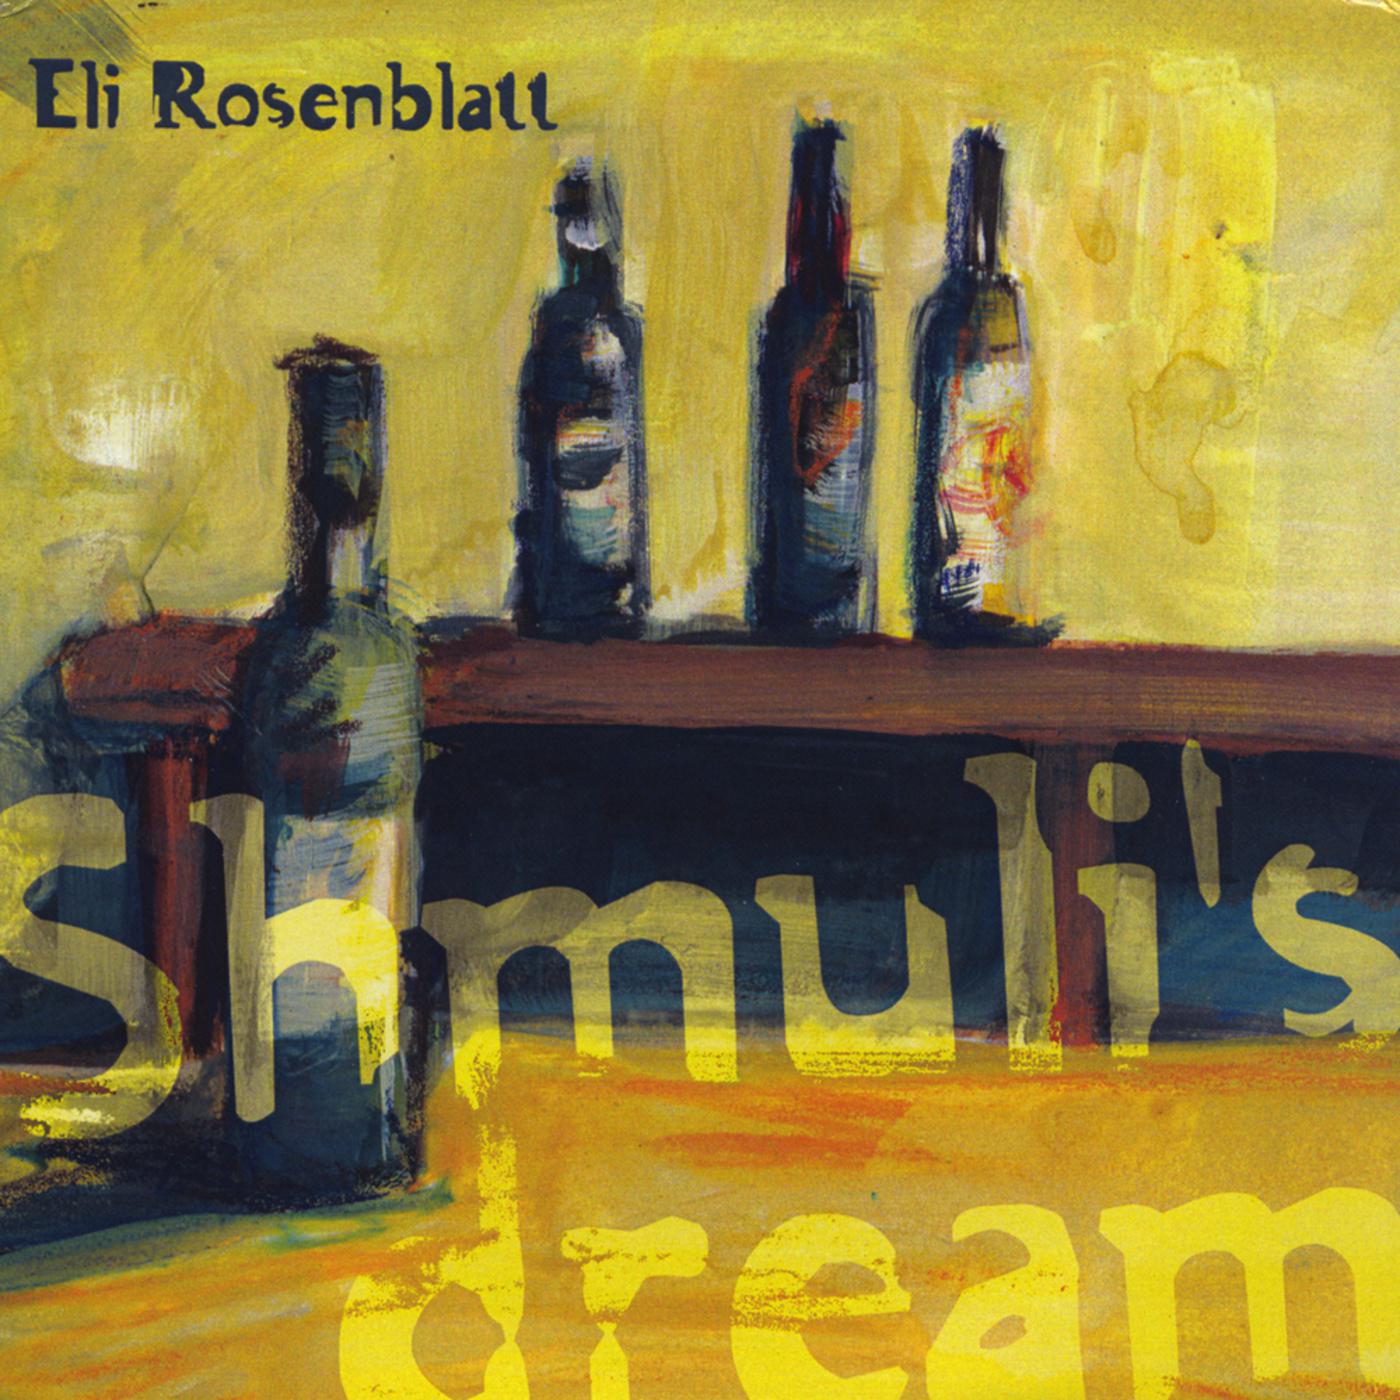 Eli Rosenblatt - Insane Lullaby